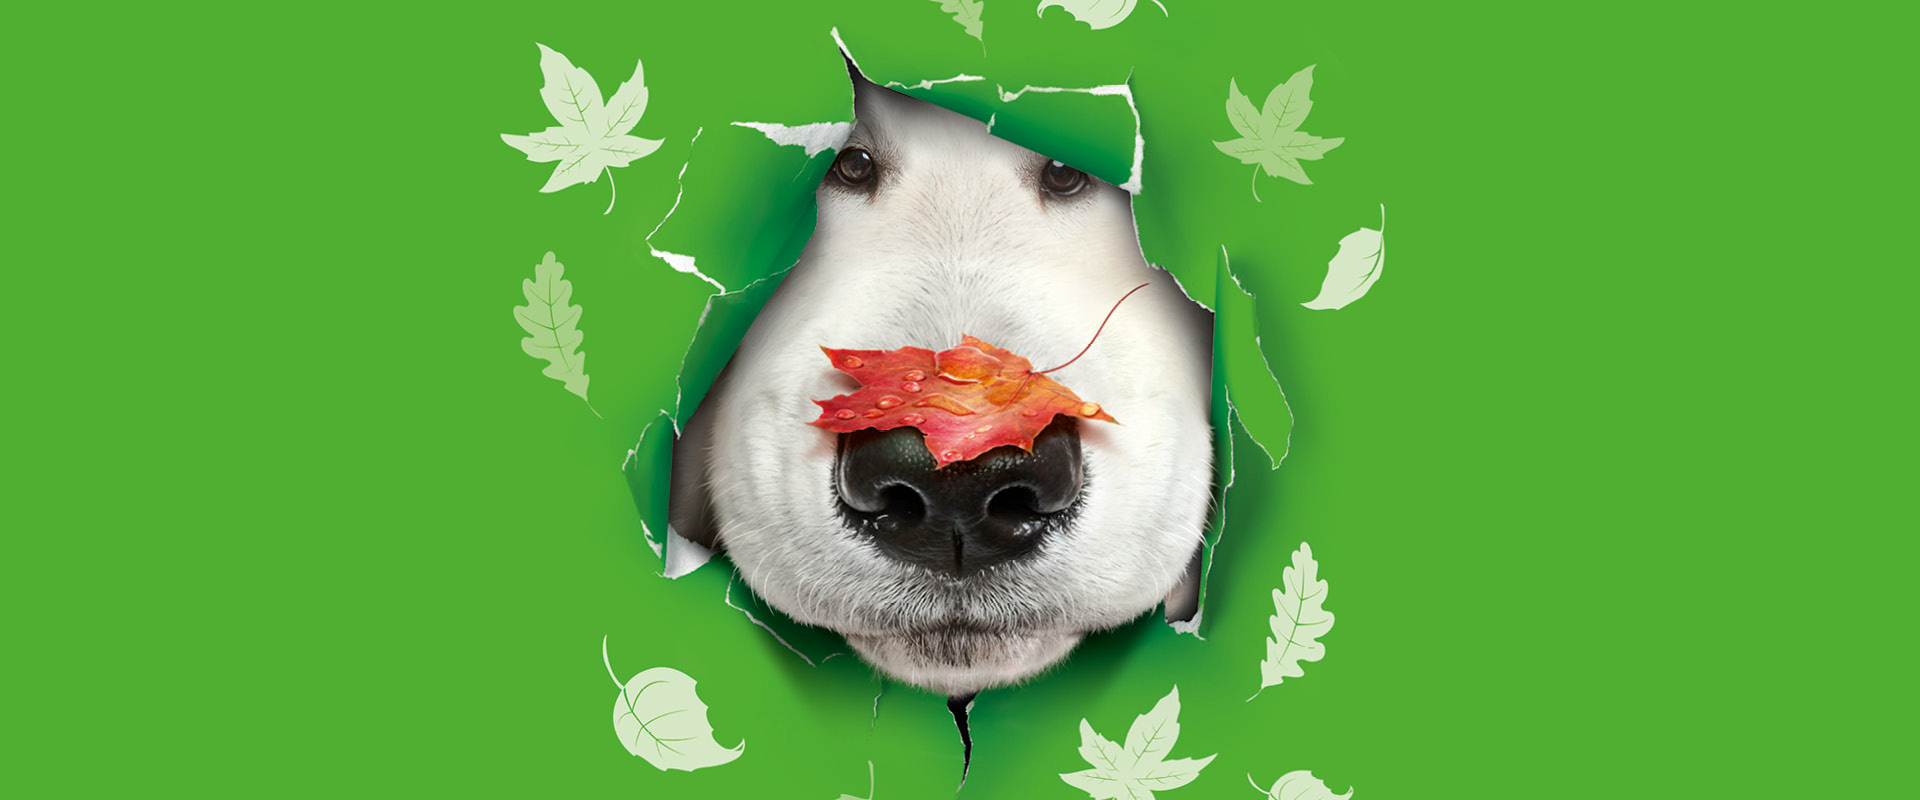 Ein Hund schaut mit seinem Gesicht durch eine Wand und hat Blätter auf der Nase